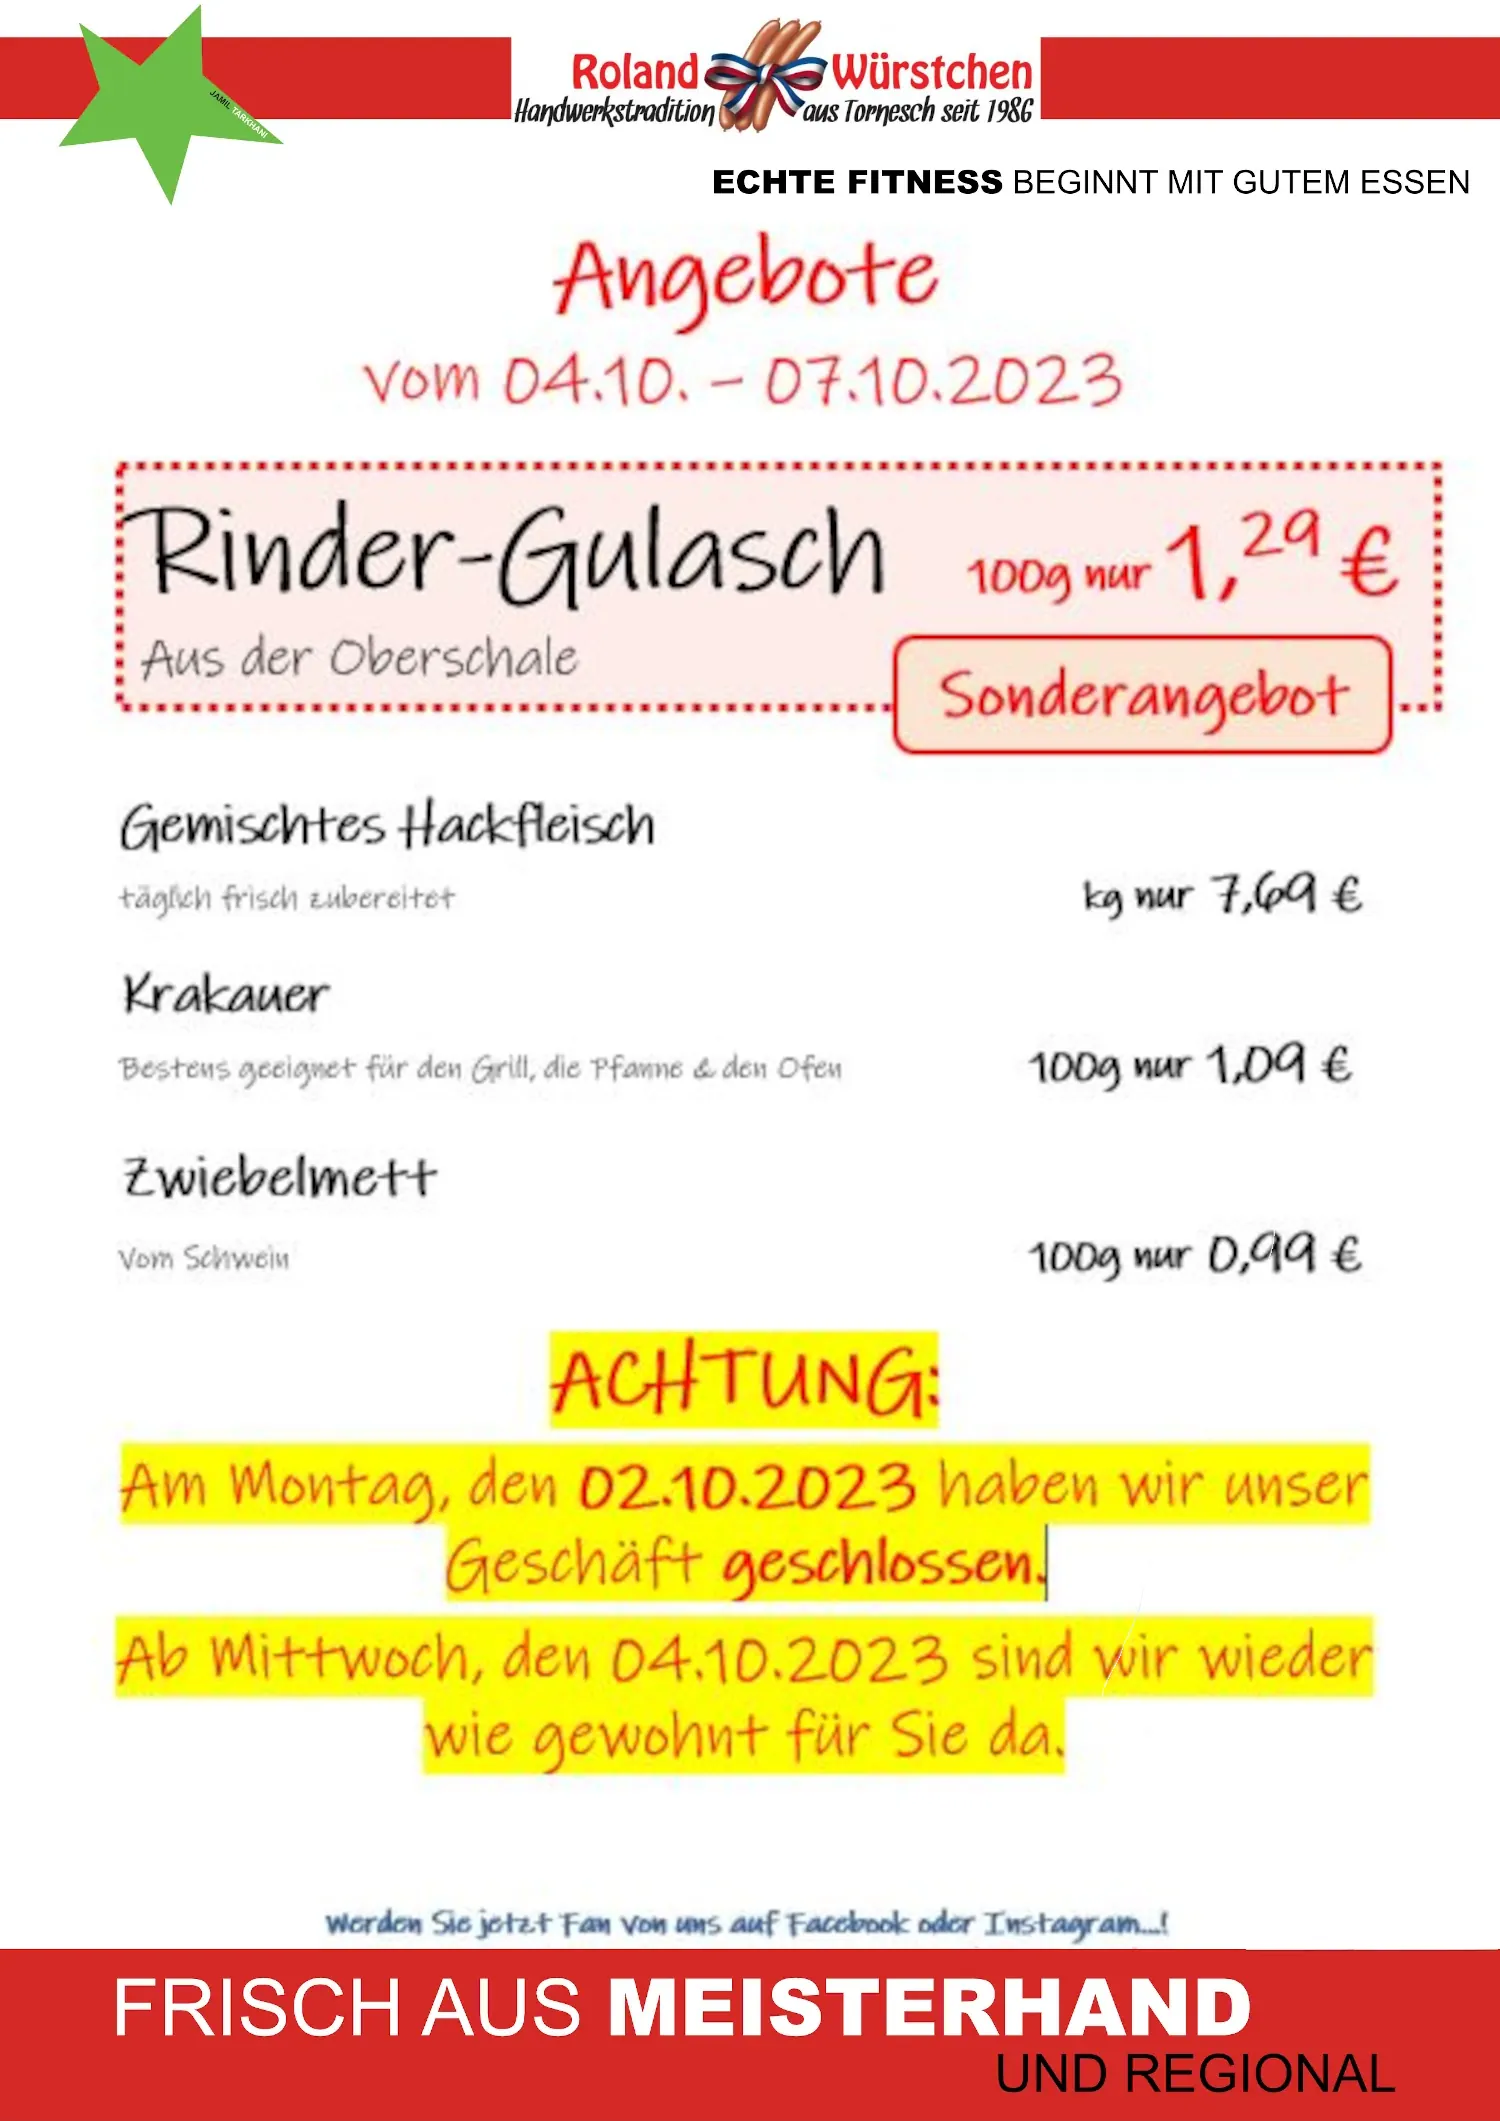 Roland Angebote 04.10. - 07.10.23